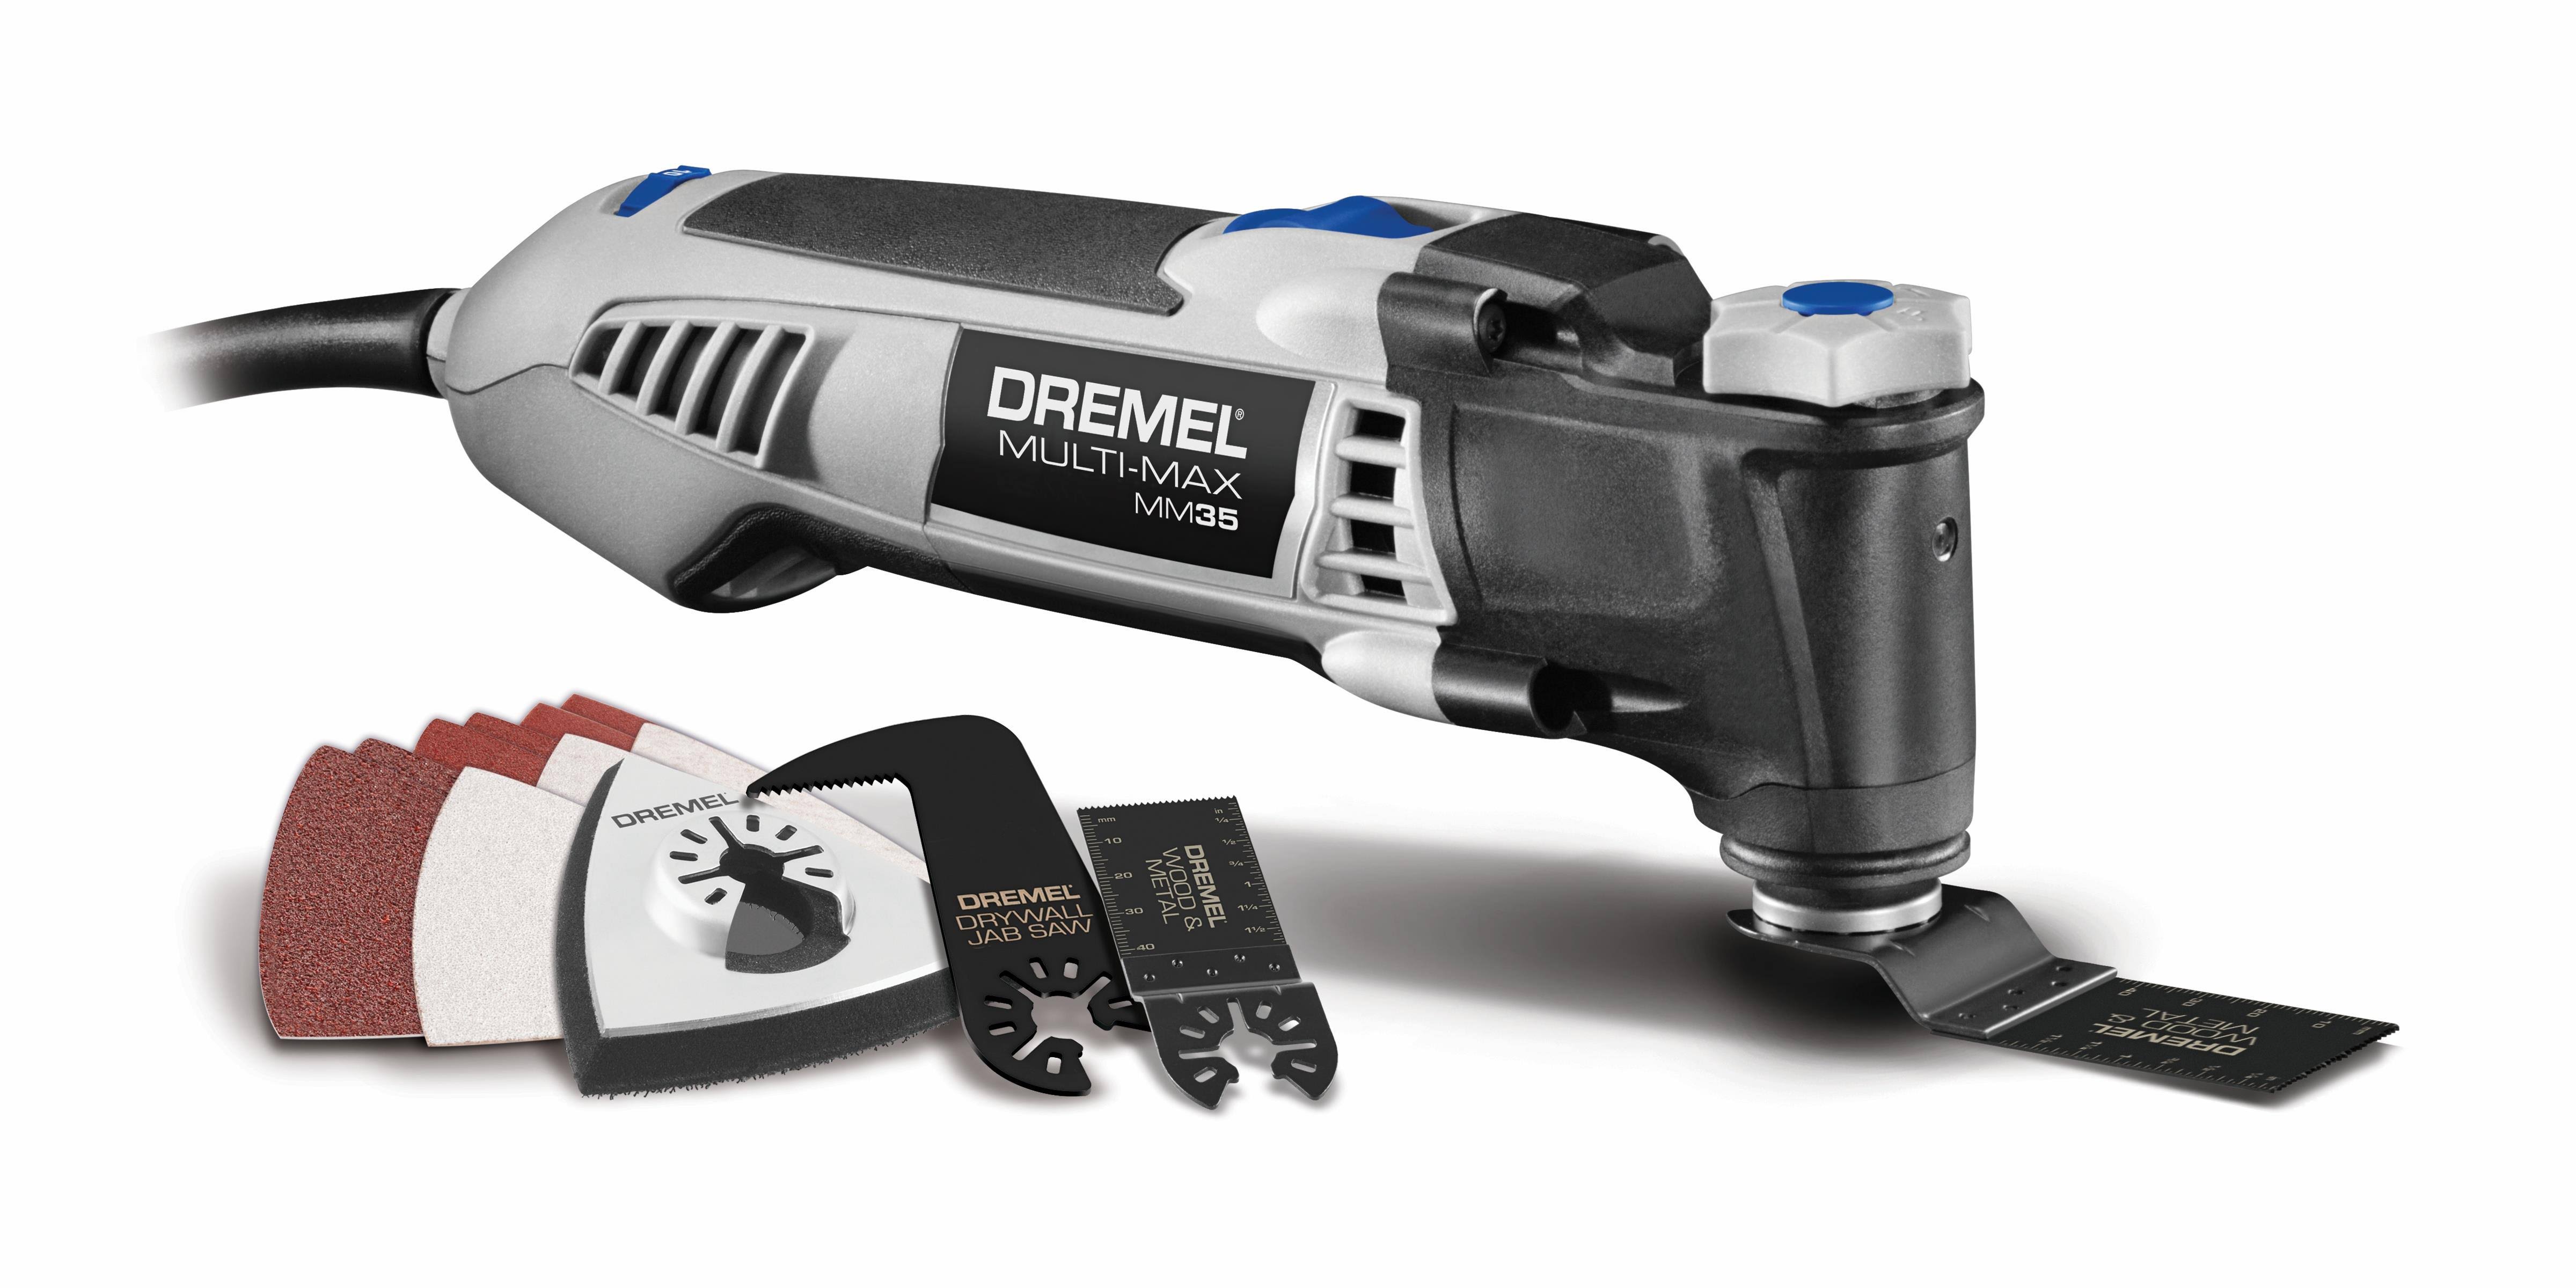 Dremel MM35-01 Multi-Max Oscillating Tool Kit, 3.5 A